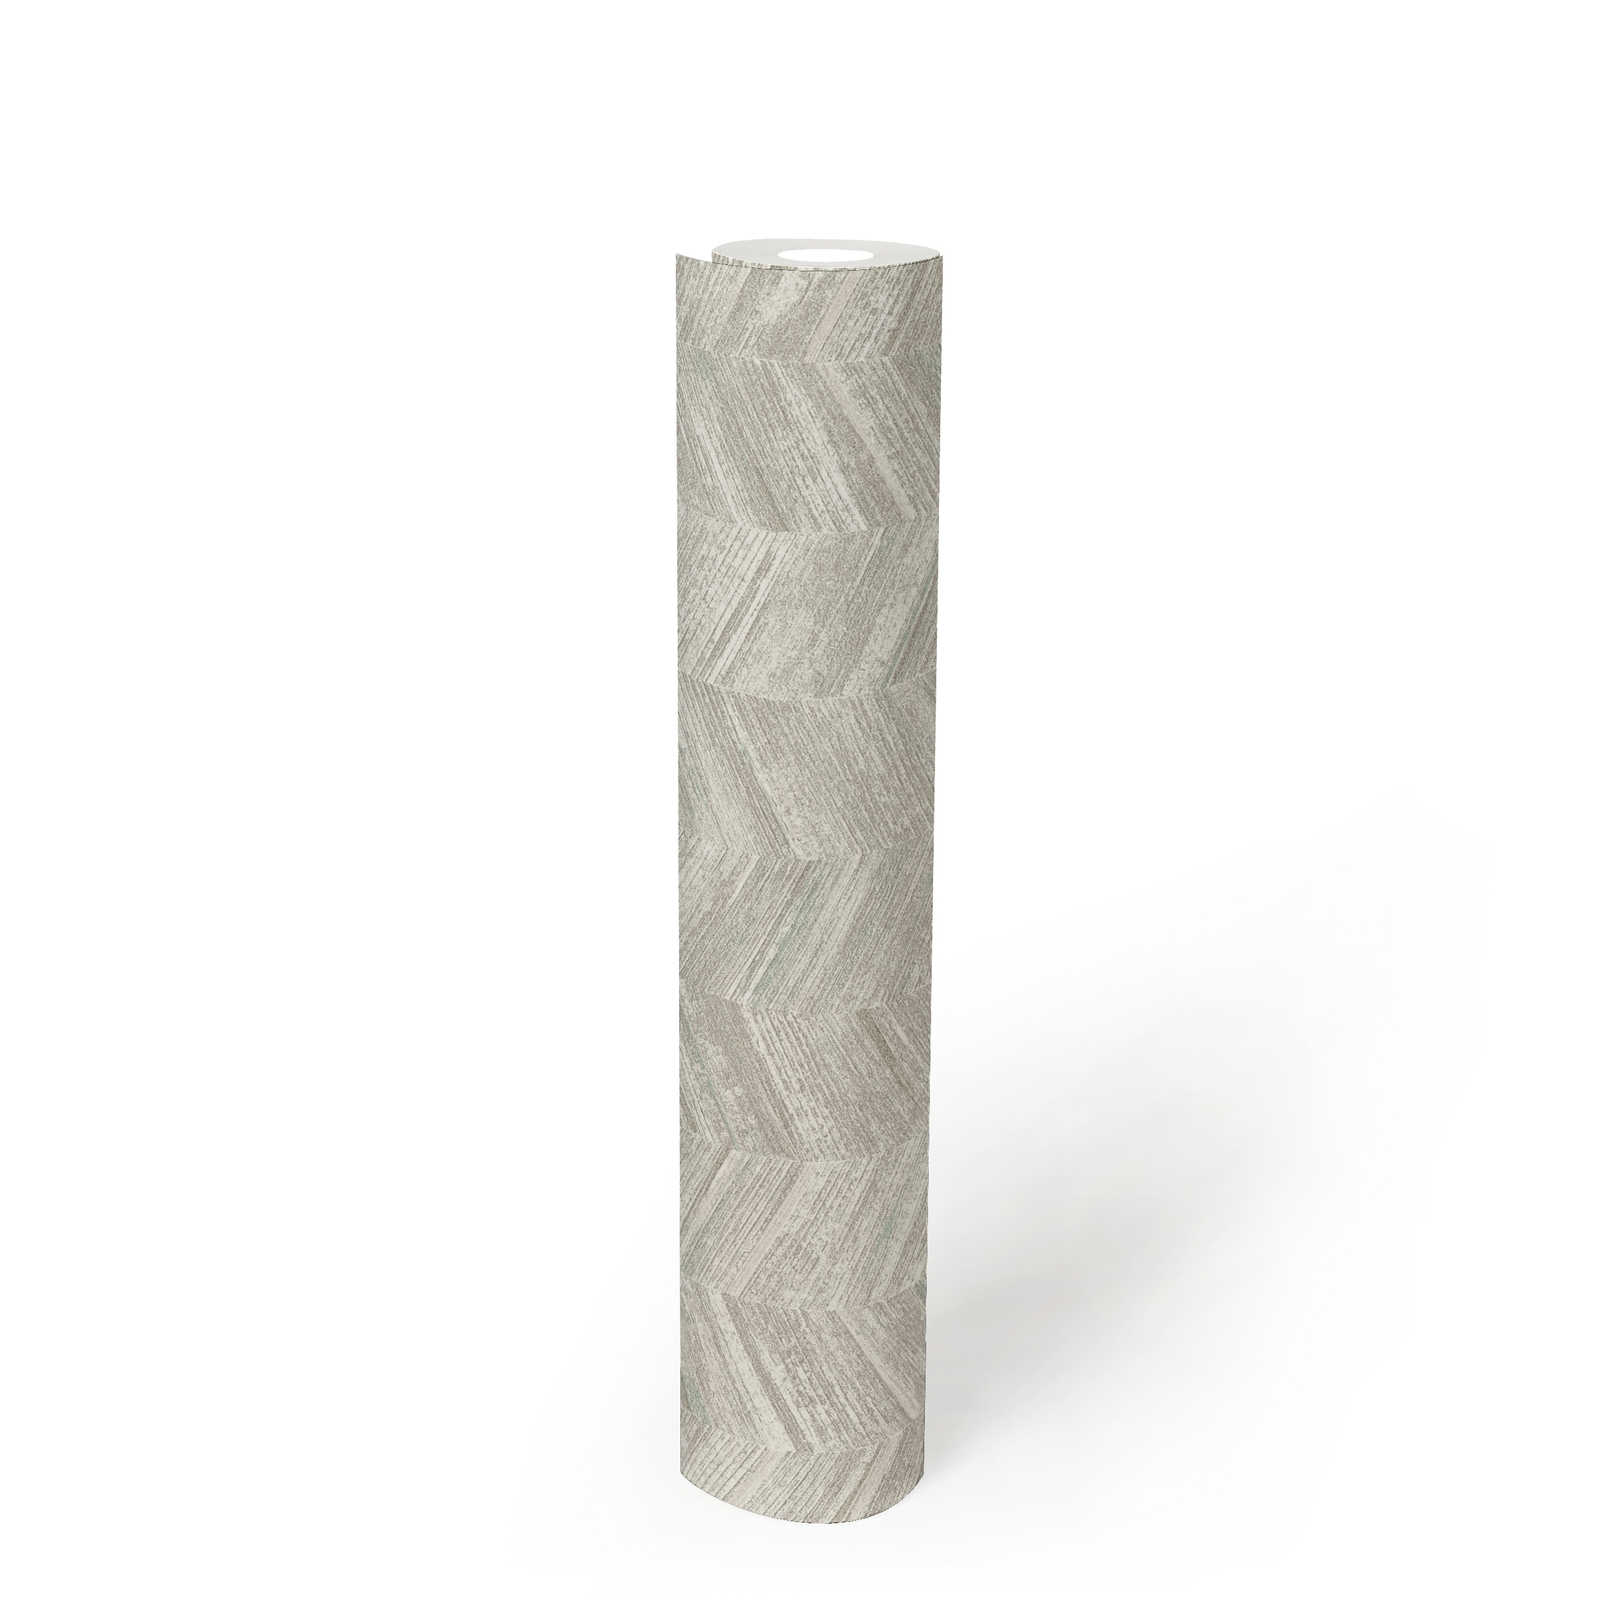             Carta da parati testurizzata in tessuto non tessuto con effetto legno e motivo a spina di pesce - grigio, bianco
        